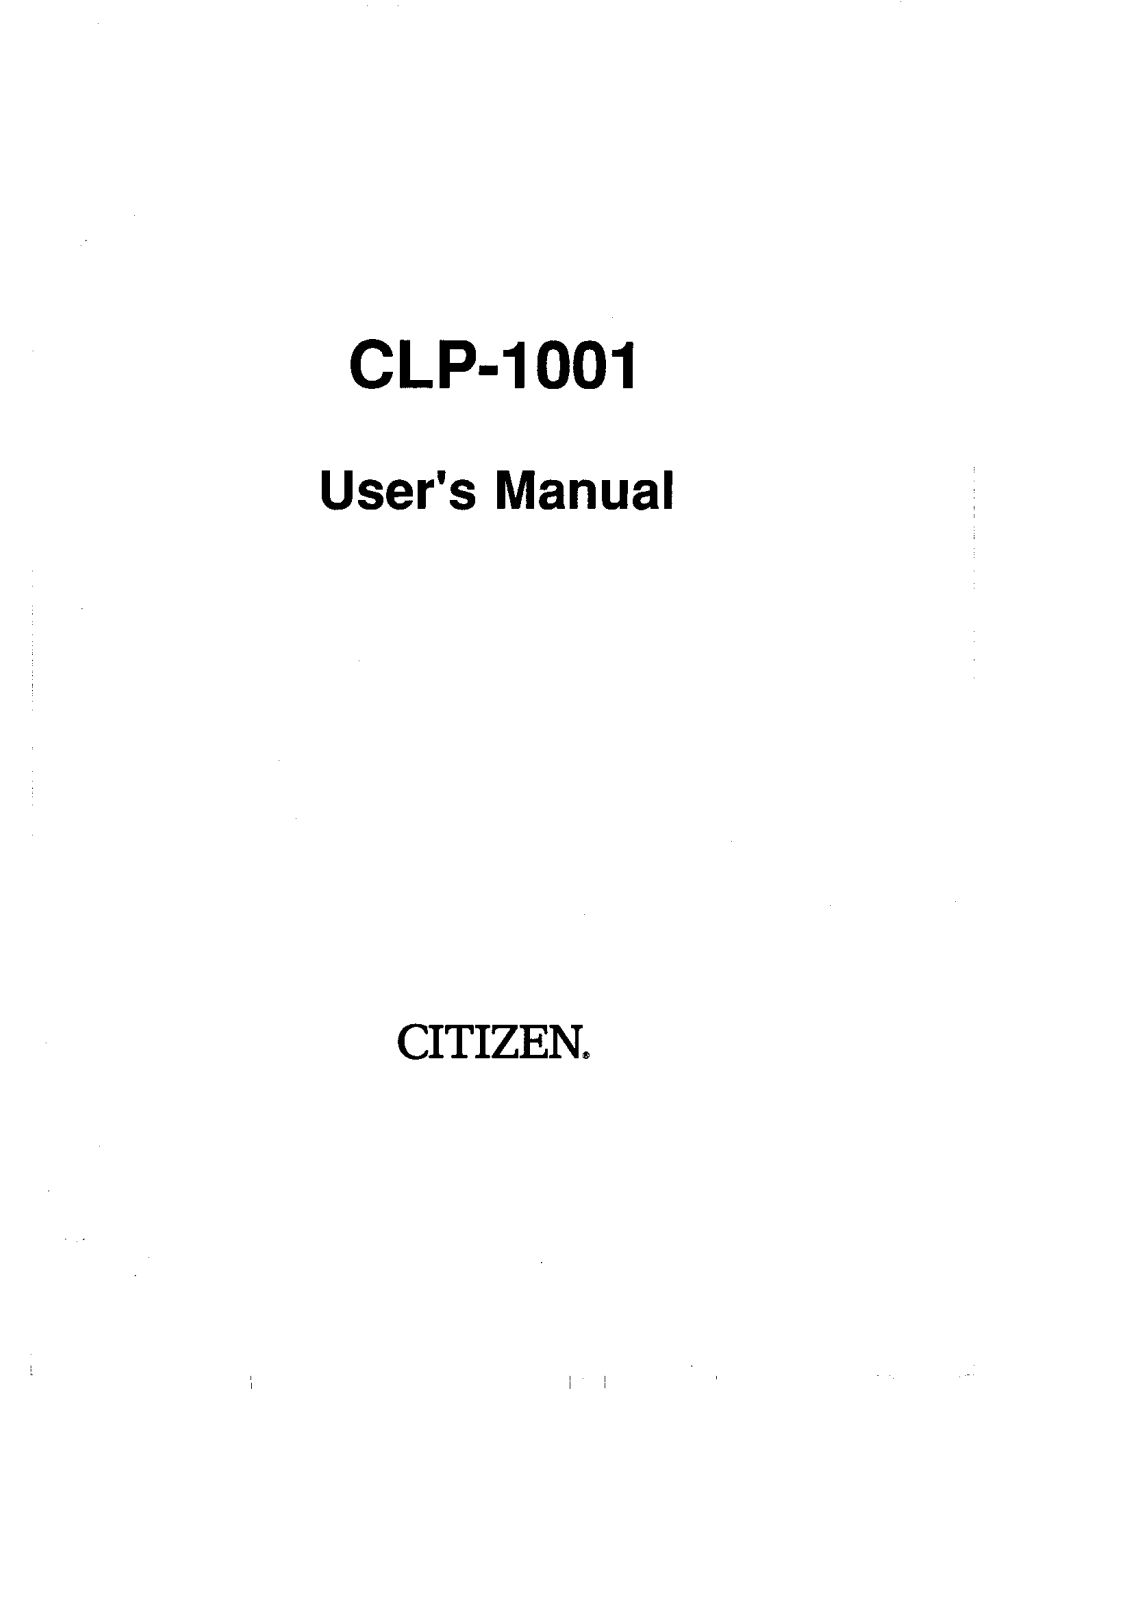 Citizen CLP-1001 User Manual